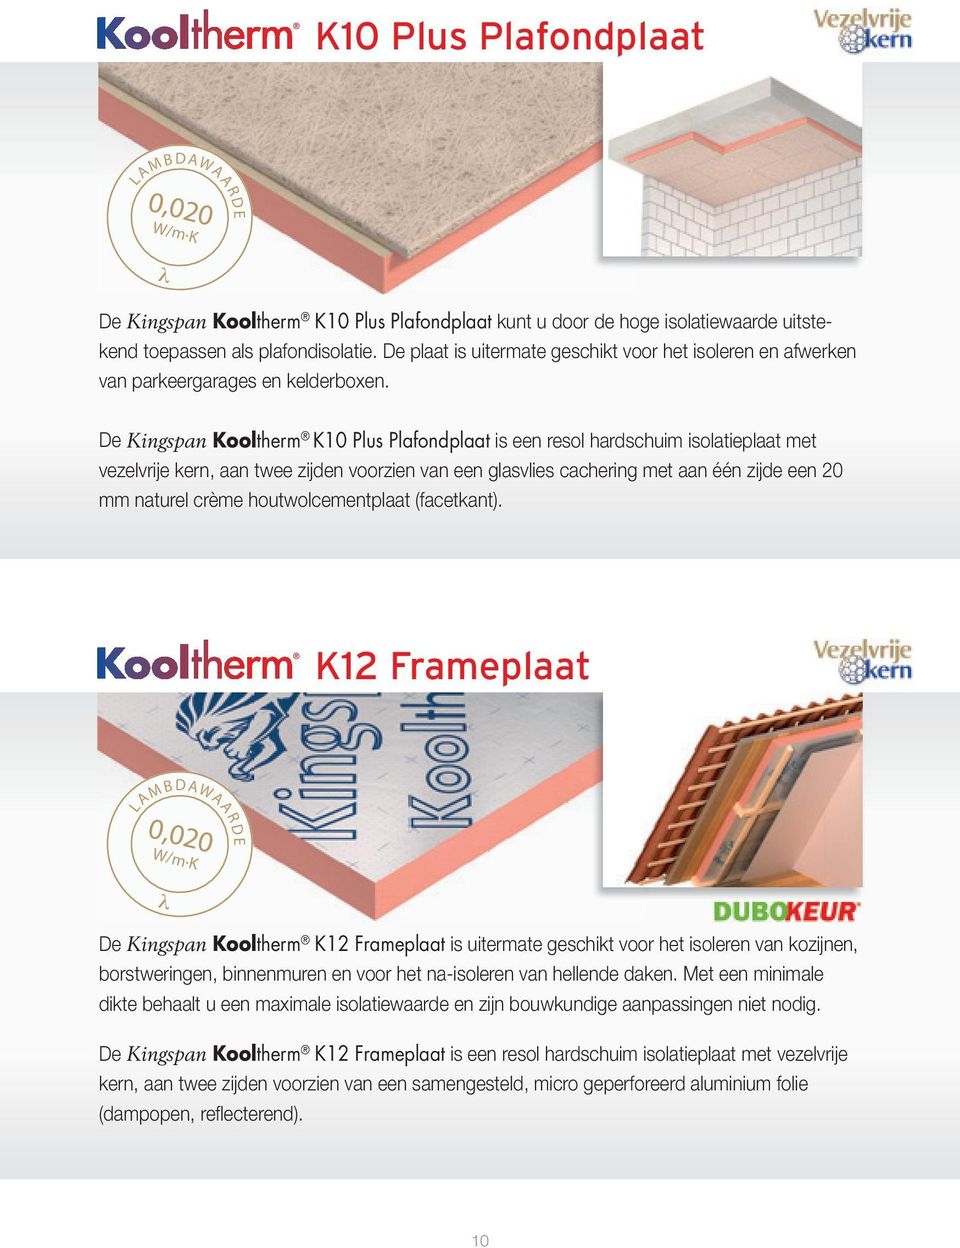 De Kingspan Kooltherm K10 Plus Plafondplaat is een resol hardschuim isolatieplaat met vezelvrije kern, aan twee zijden voorzien van een glasvlies cachering met aan één zijde een 20 mm naturel crème